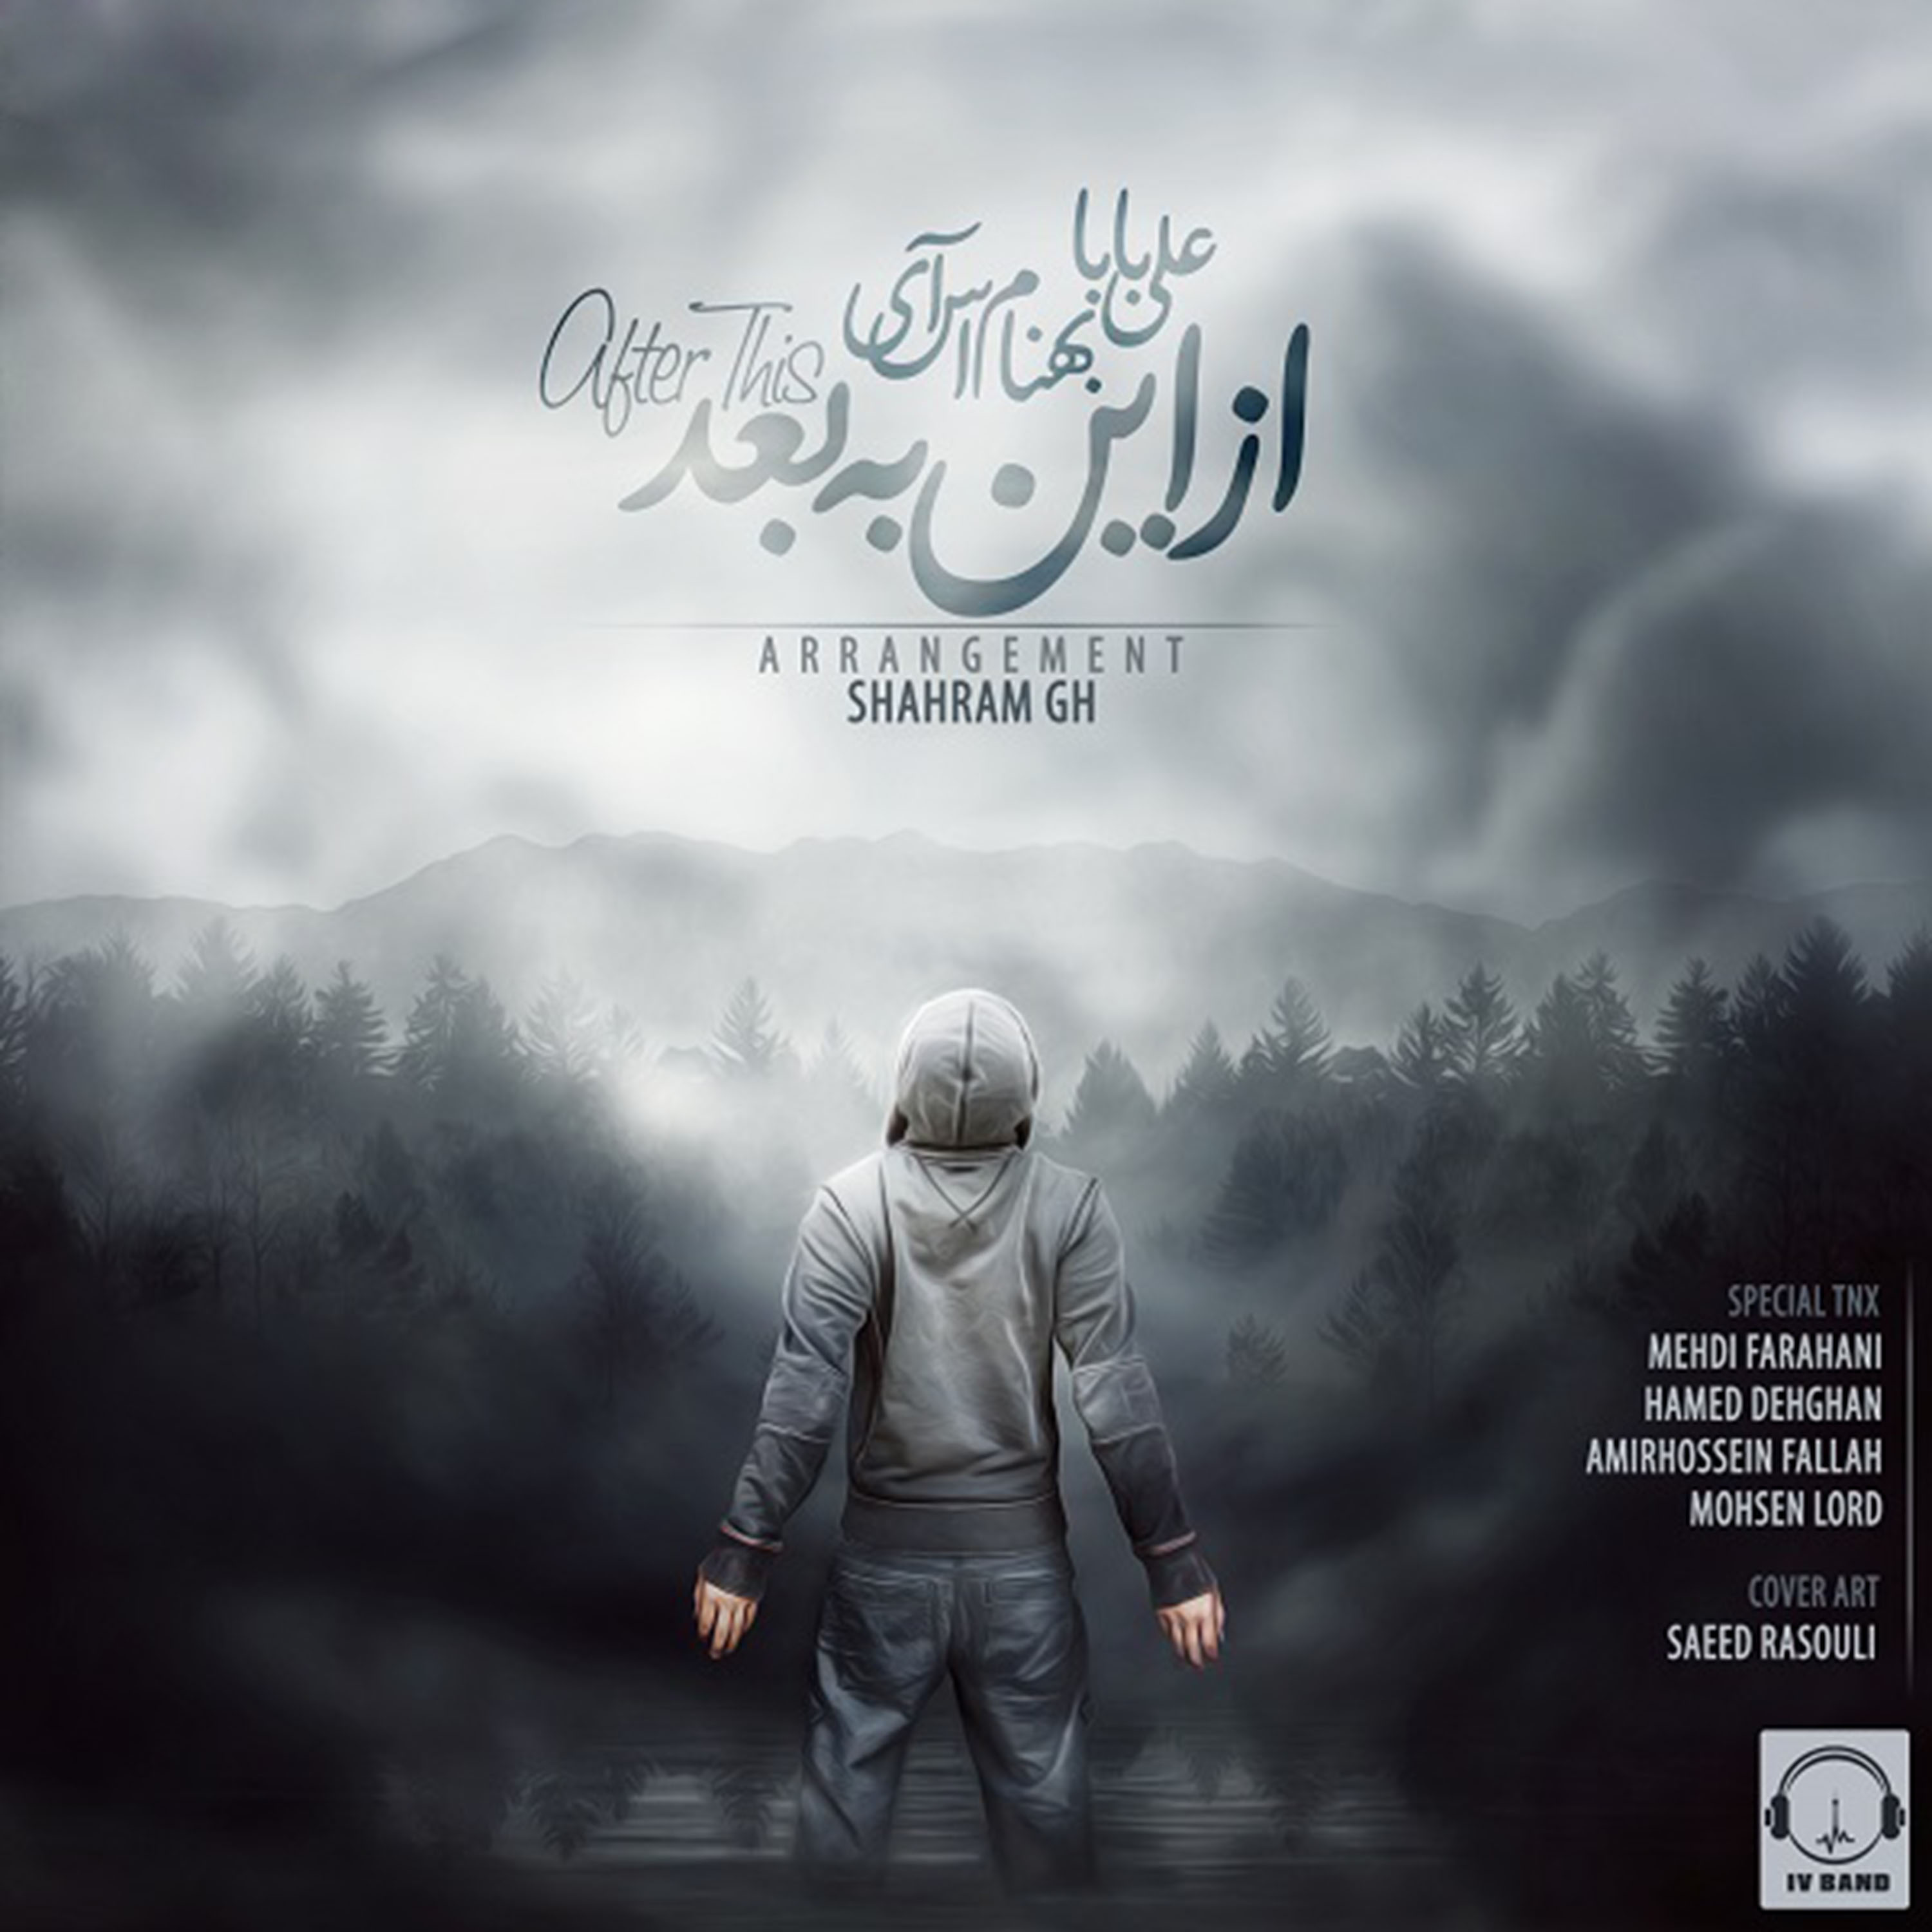  دانلود آهنگ جدید علی بابا - از این به بعد | Download New Music By Ali Baba - Az In Be Baad (feat. Behnam Si)